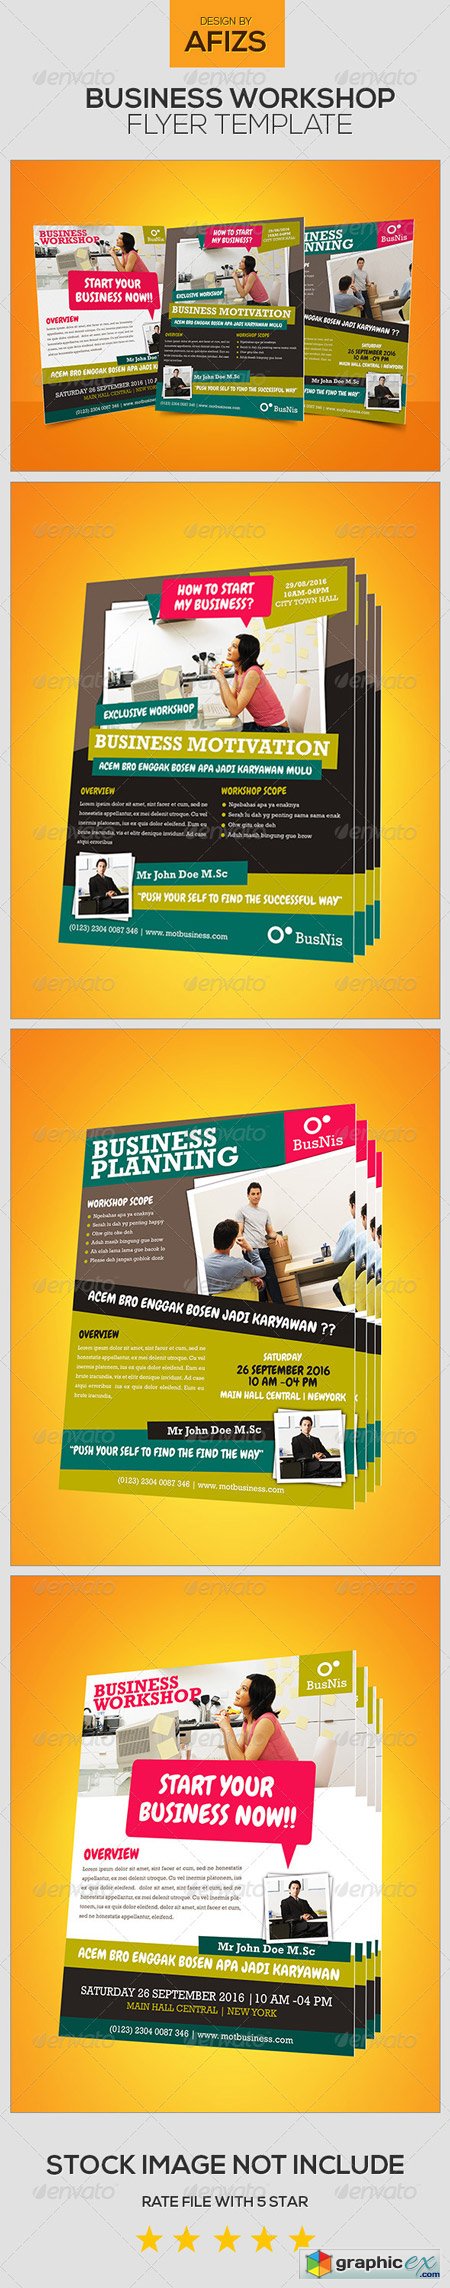 Business Workshop Flyer 5405977